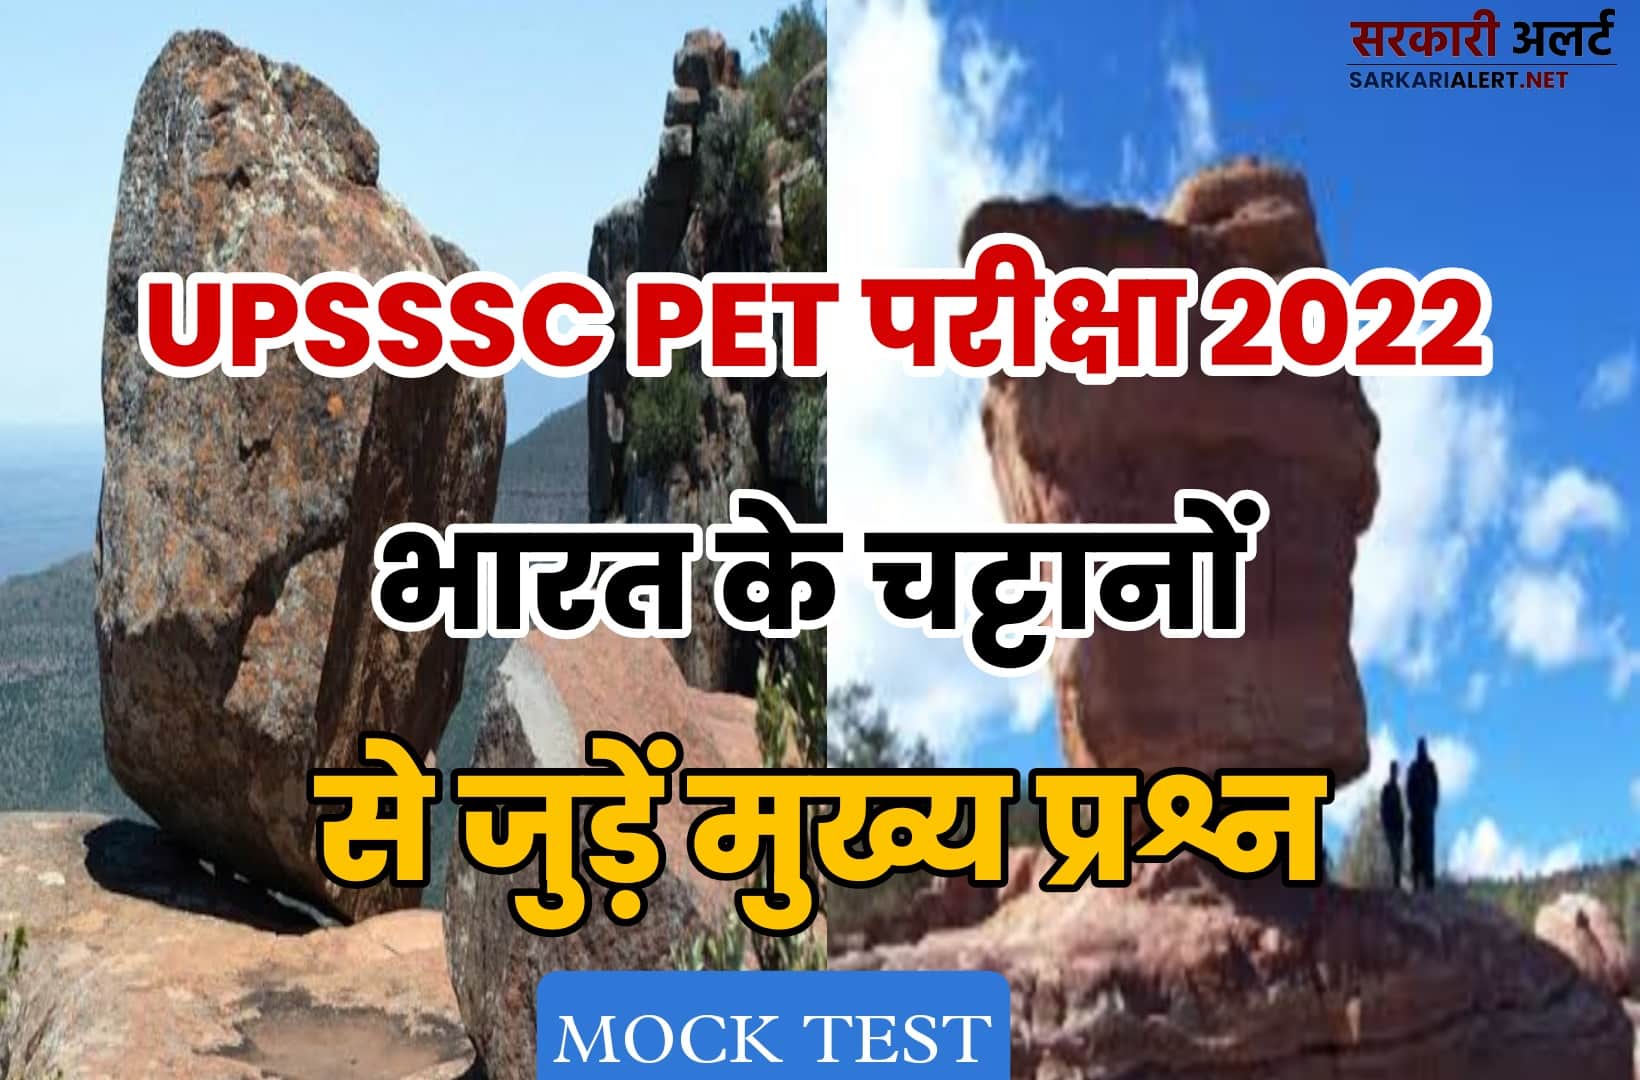 UPSSSC PET Exam 2022 MCQ | परीक्षा में जाने से पहले भारत के चट्टानों से जुड़ें मुख्य प्रश्नों को पढ़ना न भूलें